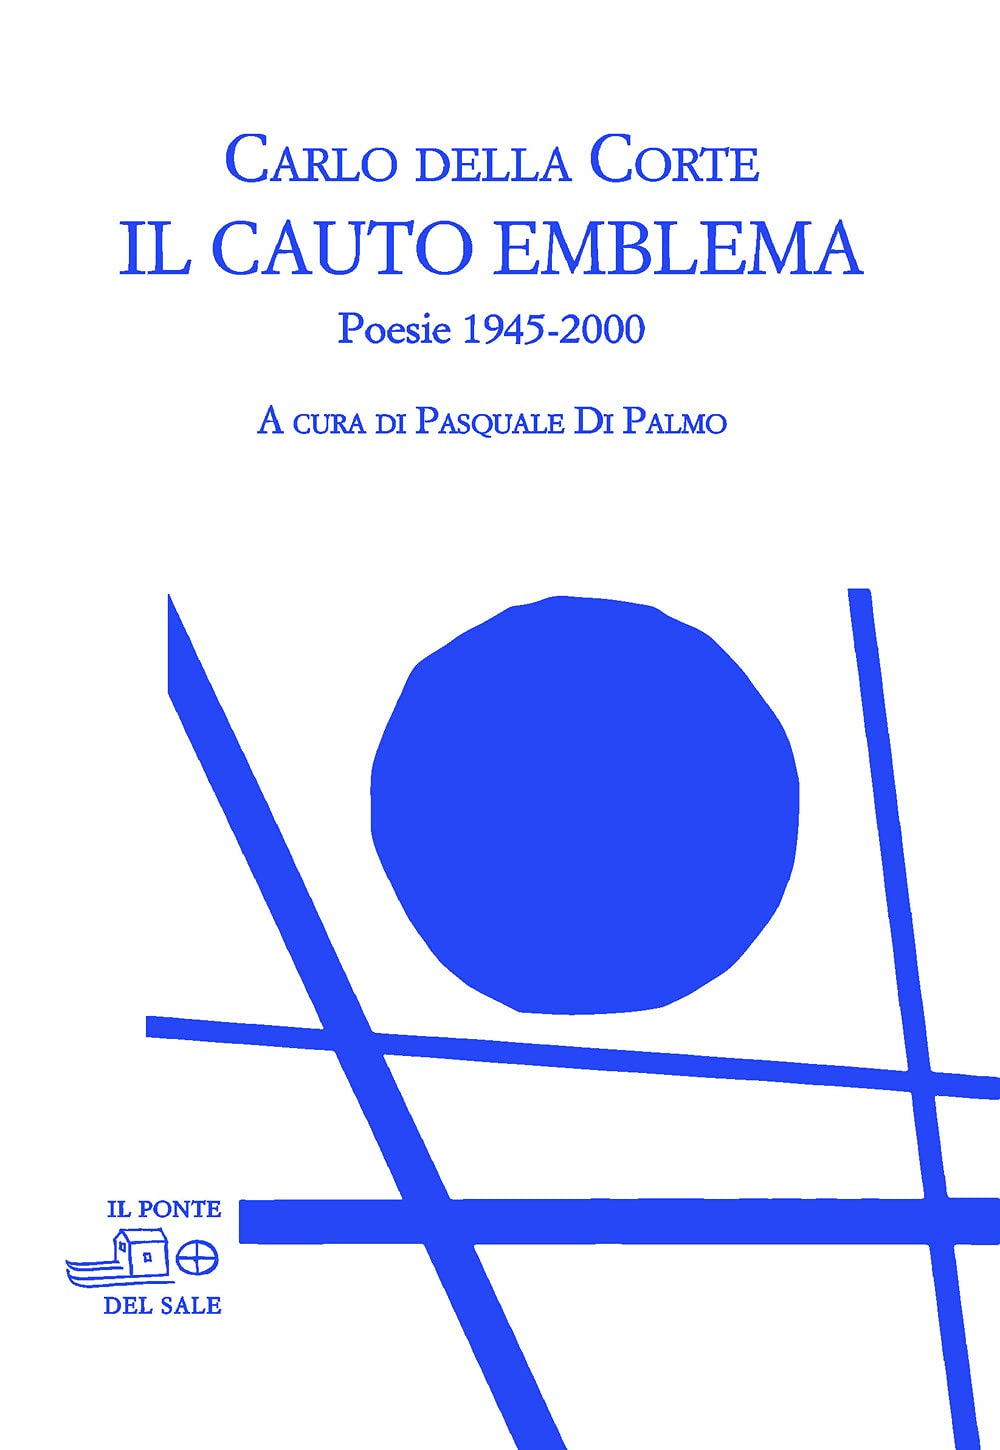 Libri Della Corte Carlo - Il Cauto Emblema. Poesie 1945-2000 NUOVO SIGILLATO, EDIZIONE DEL 30/04/2021 SUBITO DISPONIBILE